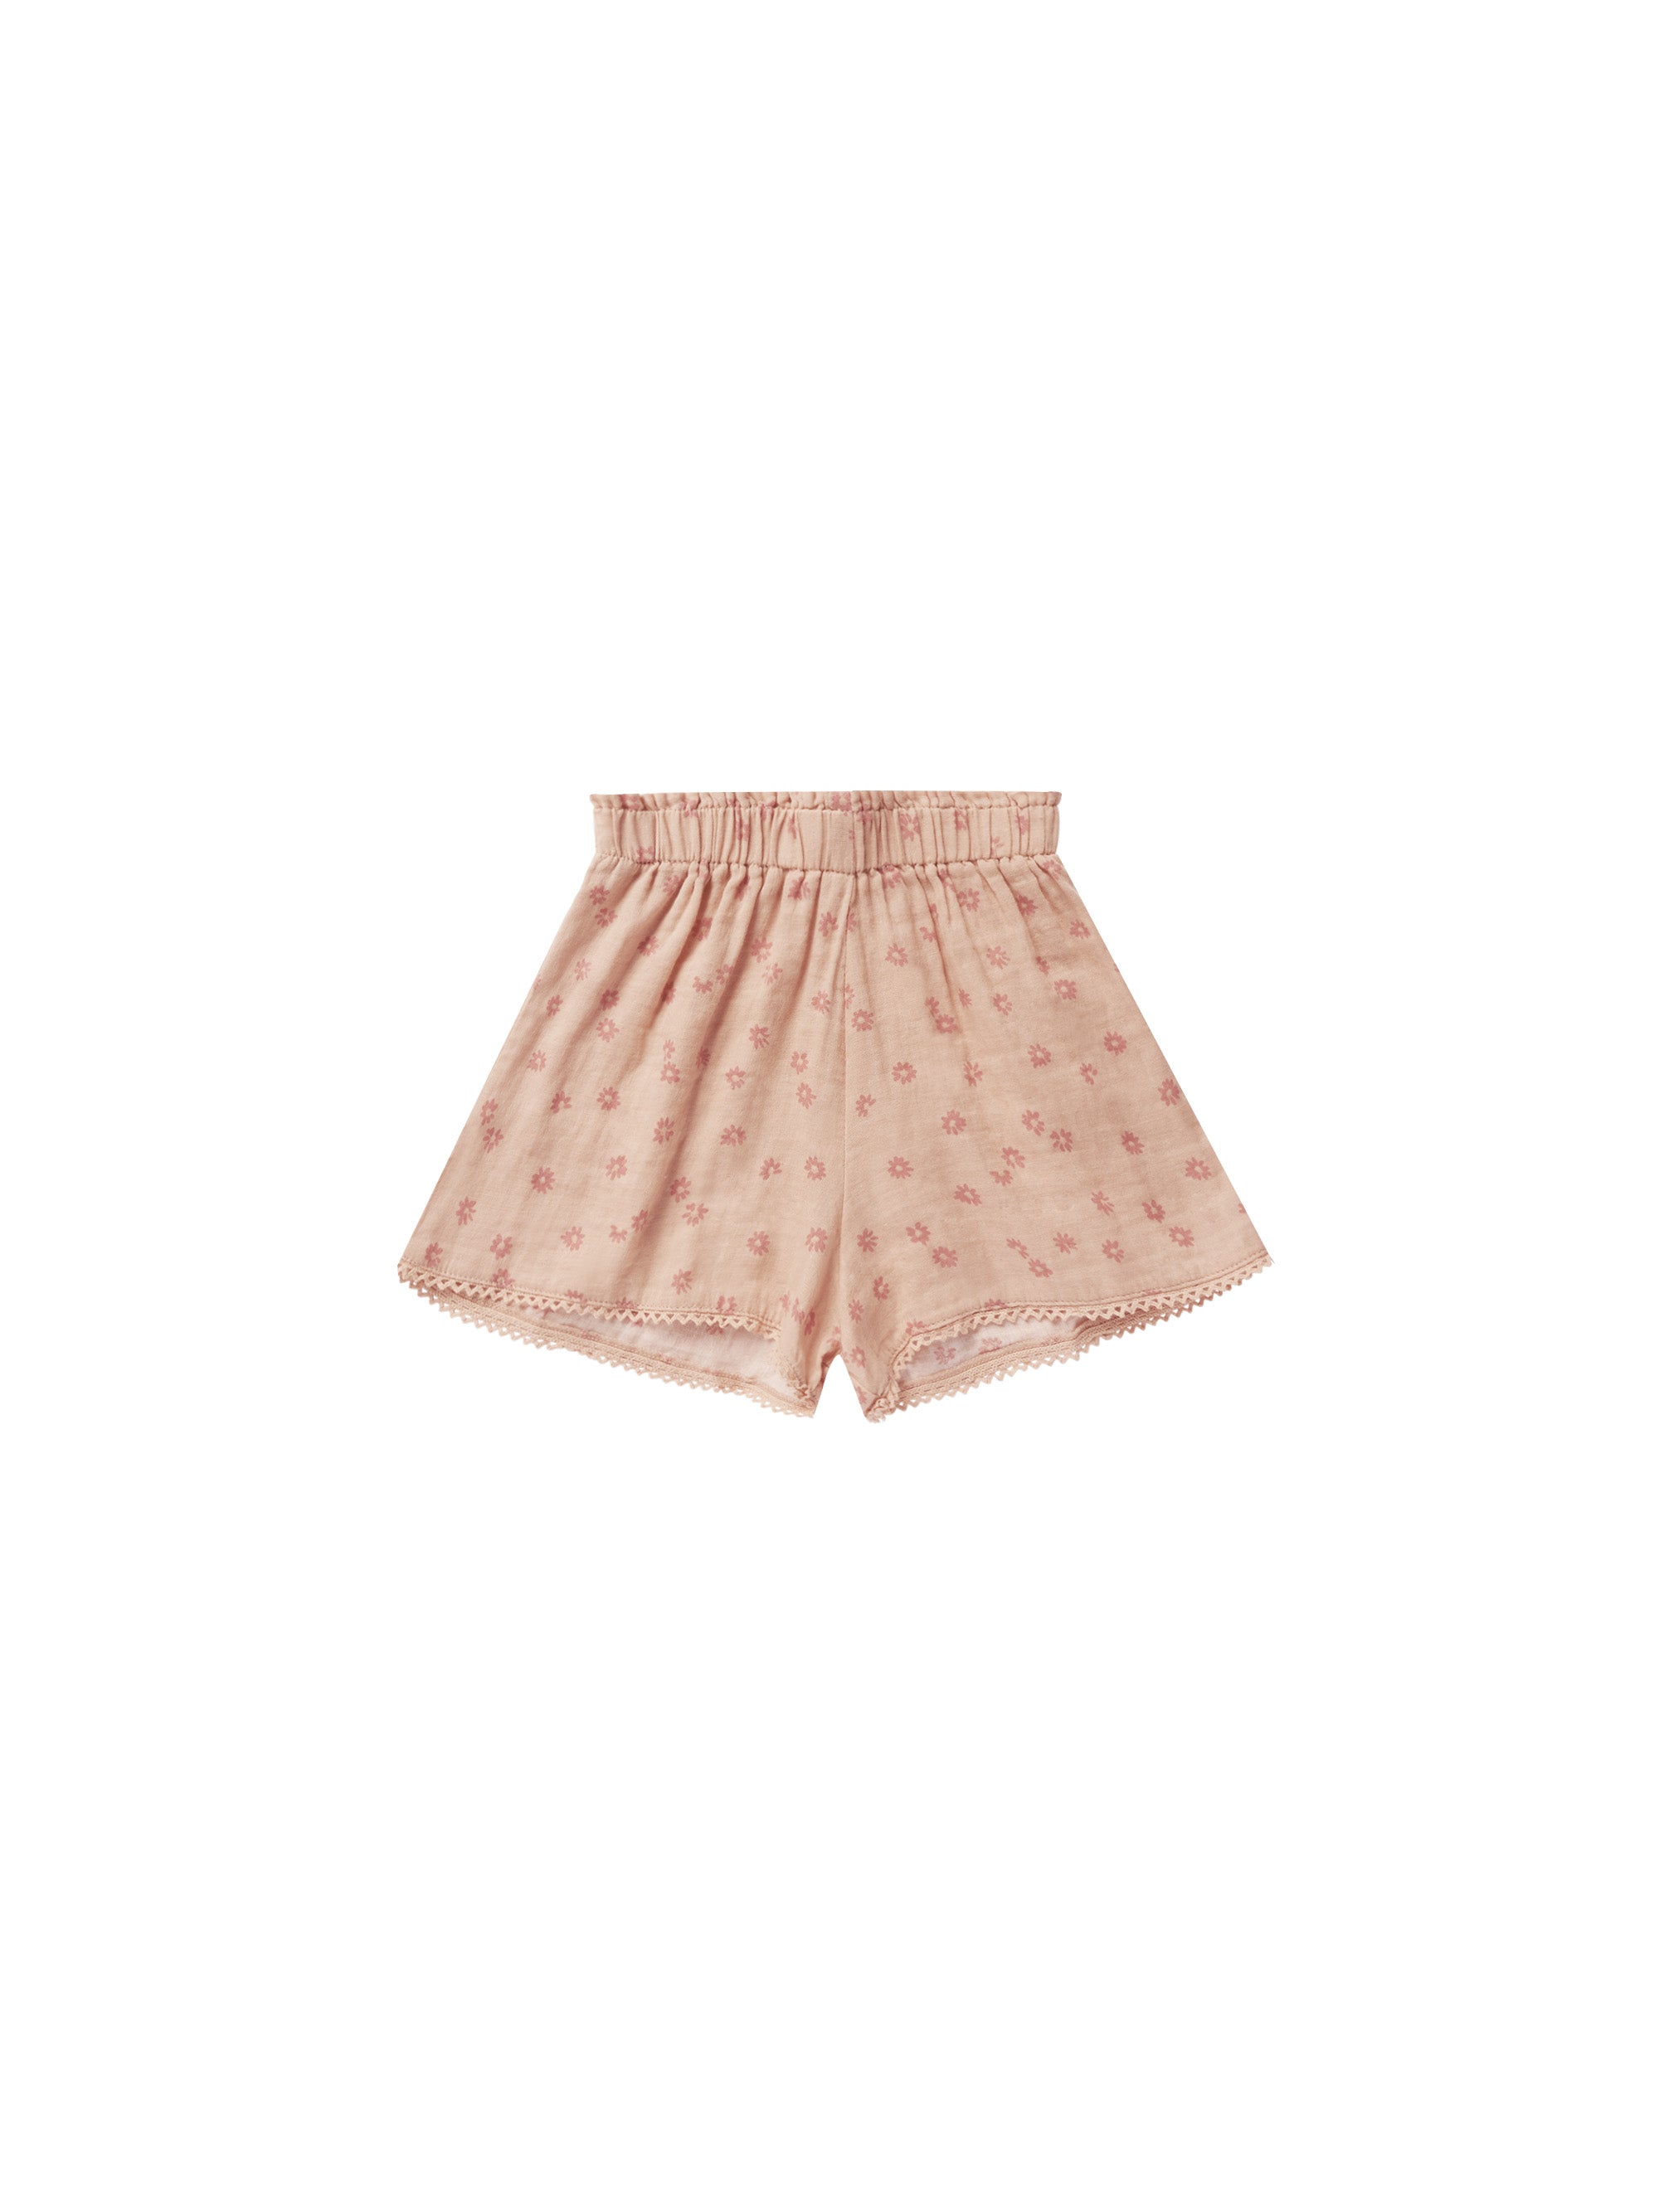 Remi Top & Short Set - Pink Daisy - Twinkle Twinkle Little One